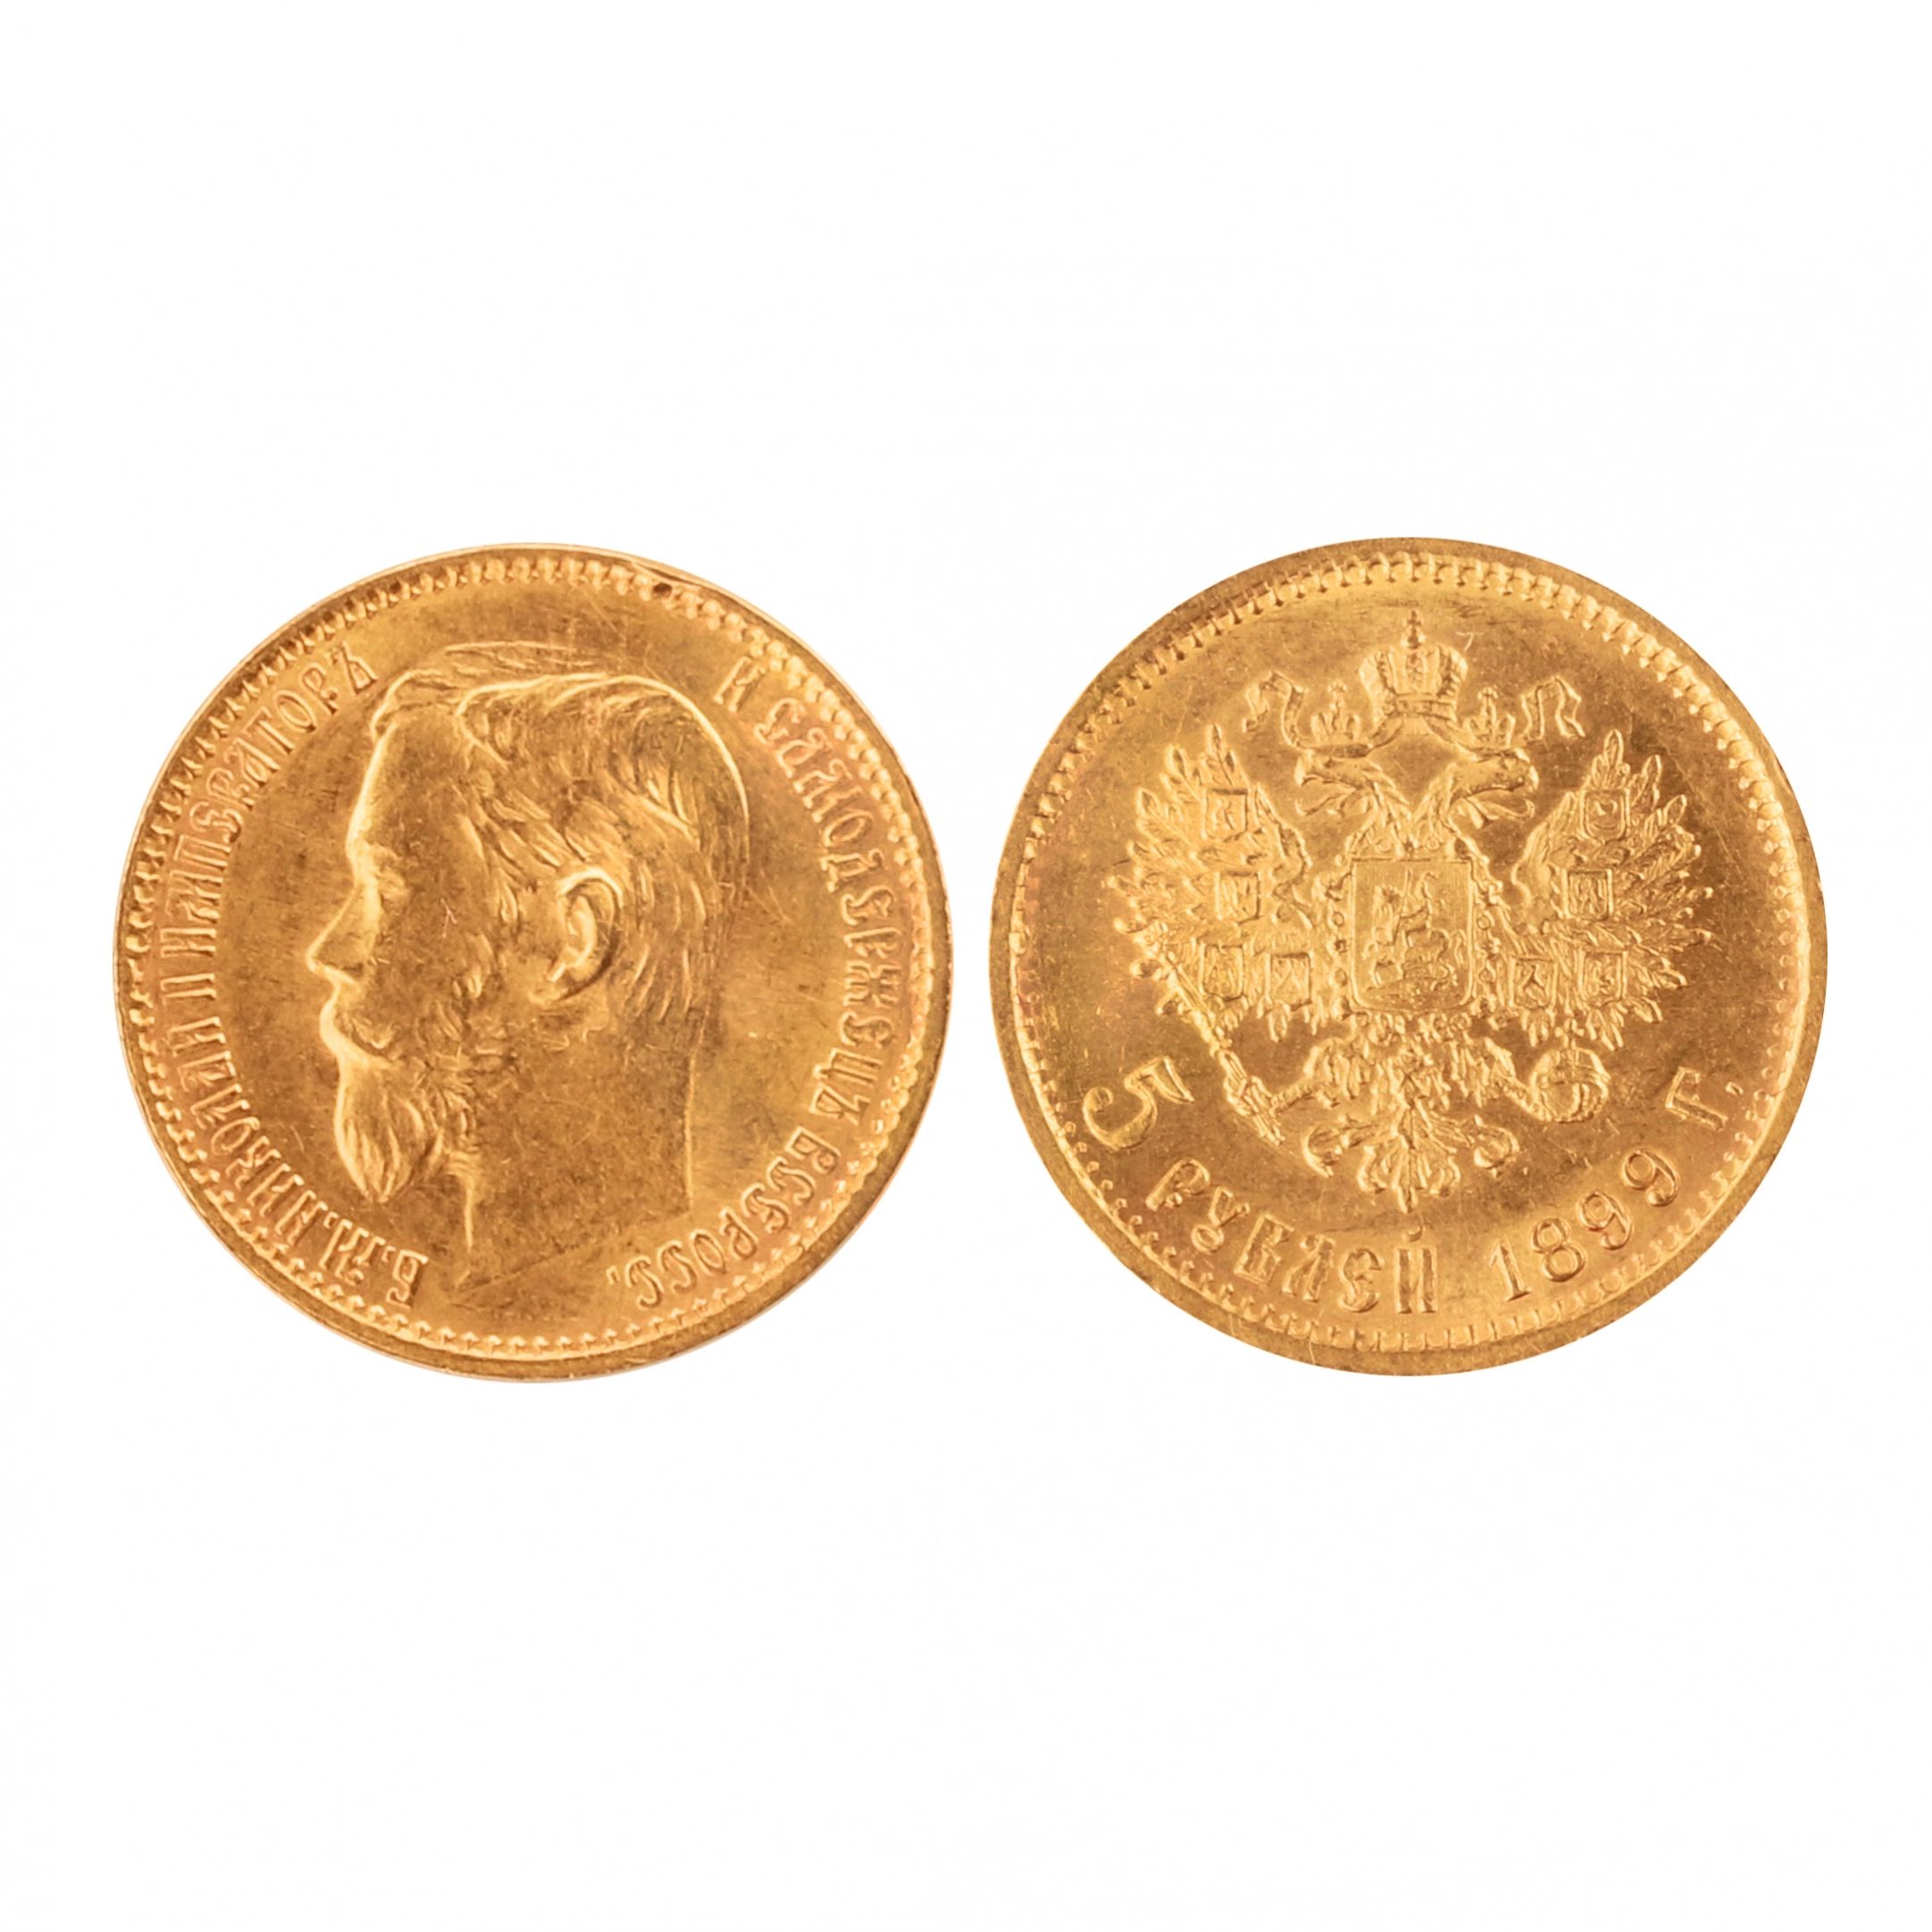 Zelta-moneta-nominala-Pieci-rubli-Krievija-1899-